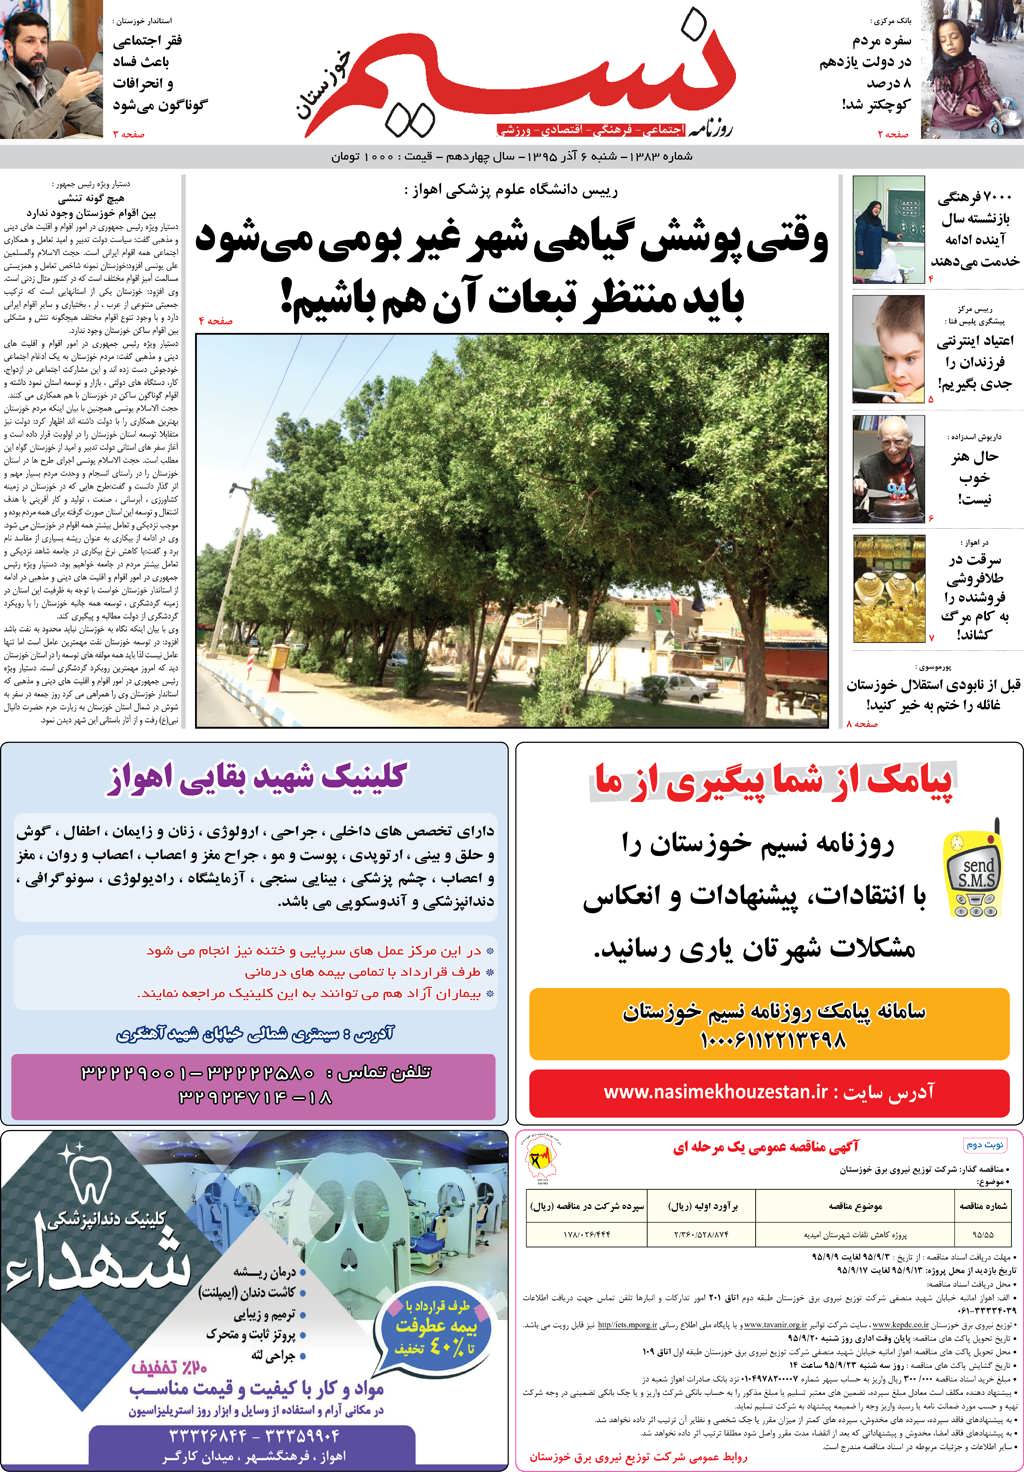 صفحه اصلی روزنامه نسیم شماره 1383